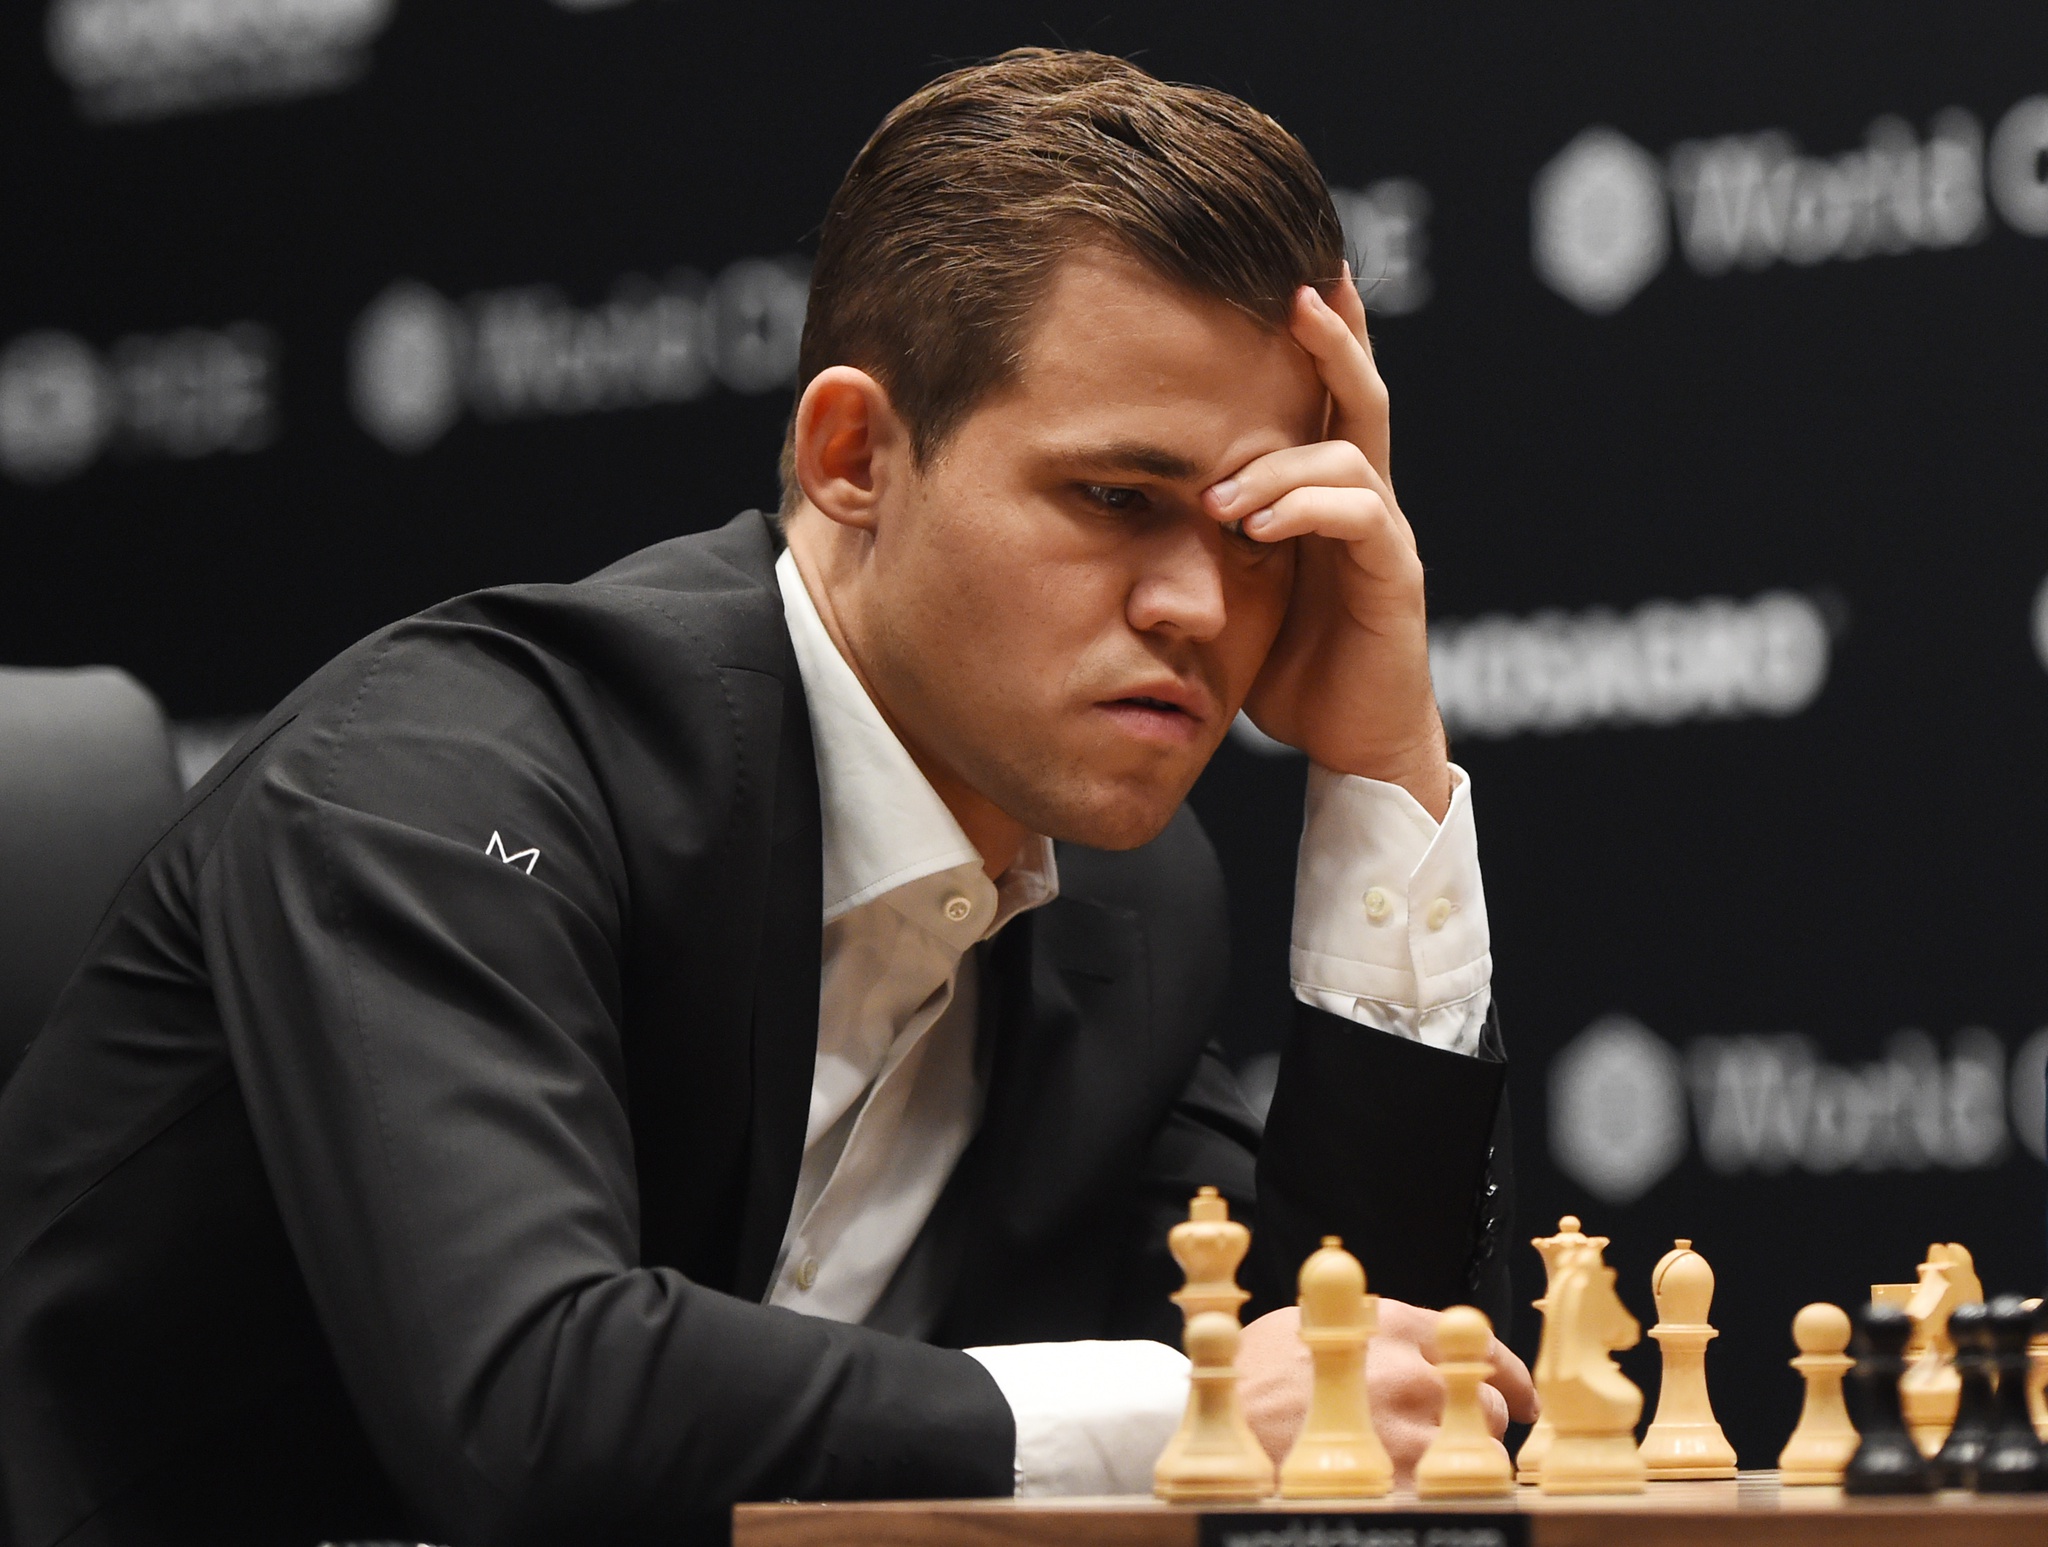 O CARA É MUITO BOM! Magnus Carlsen não dá chance! #shorts #xadrez 